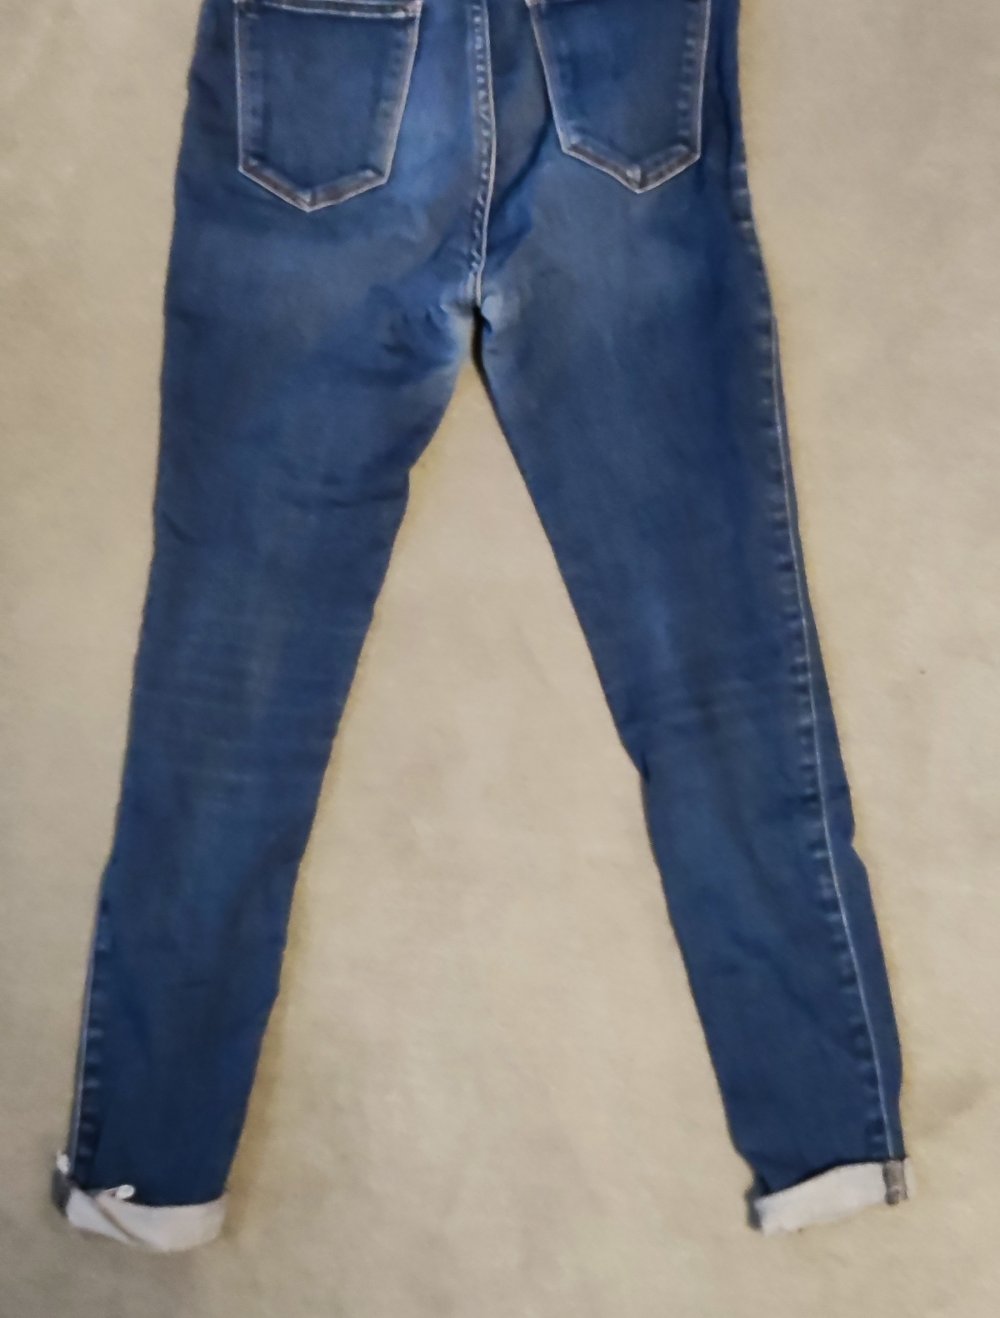 Skinny Jeans Abercrombie & Fitch W25